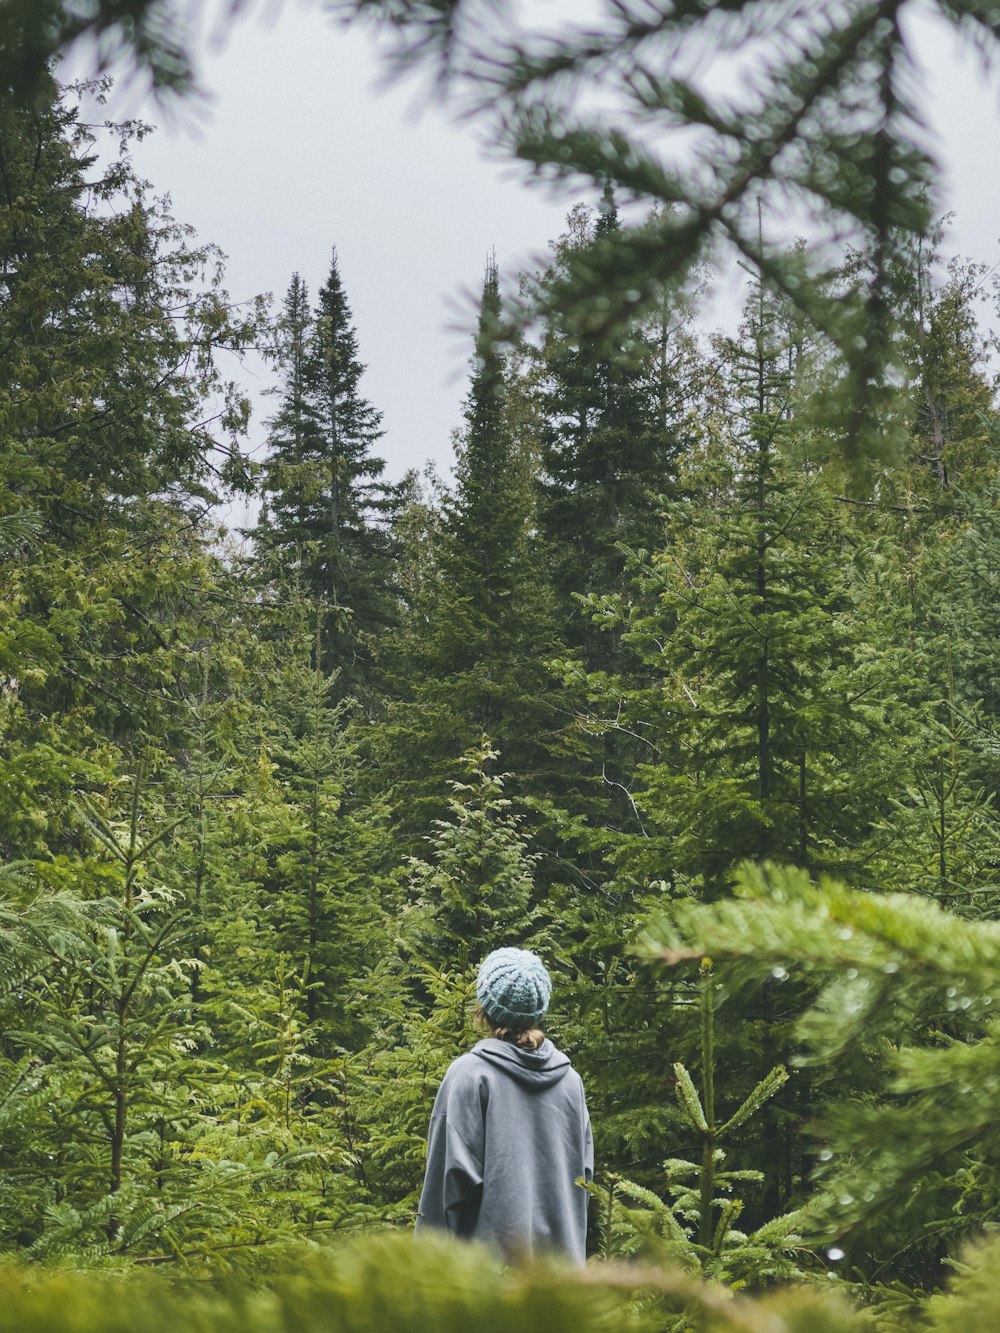 Persona in felpa grigia con cappuccio in piedi davanti agli alberi verdi durante il giorno